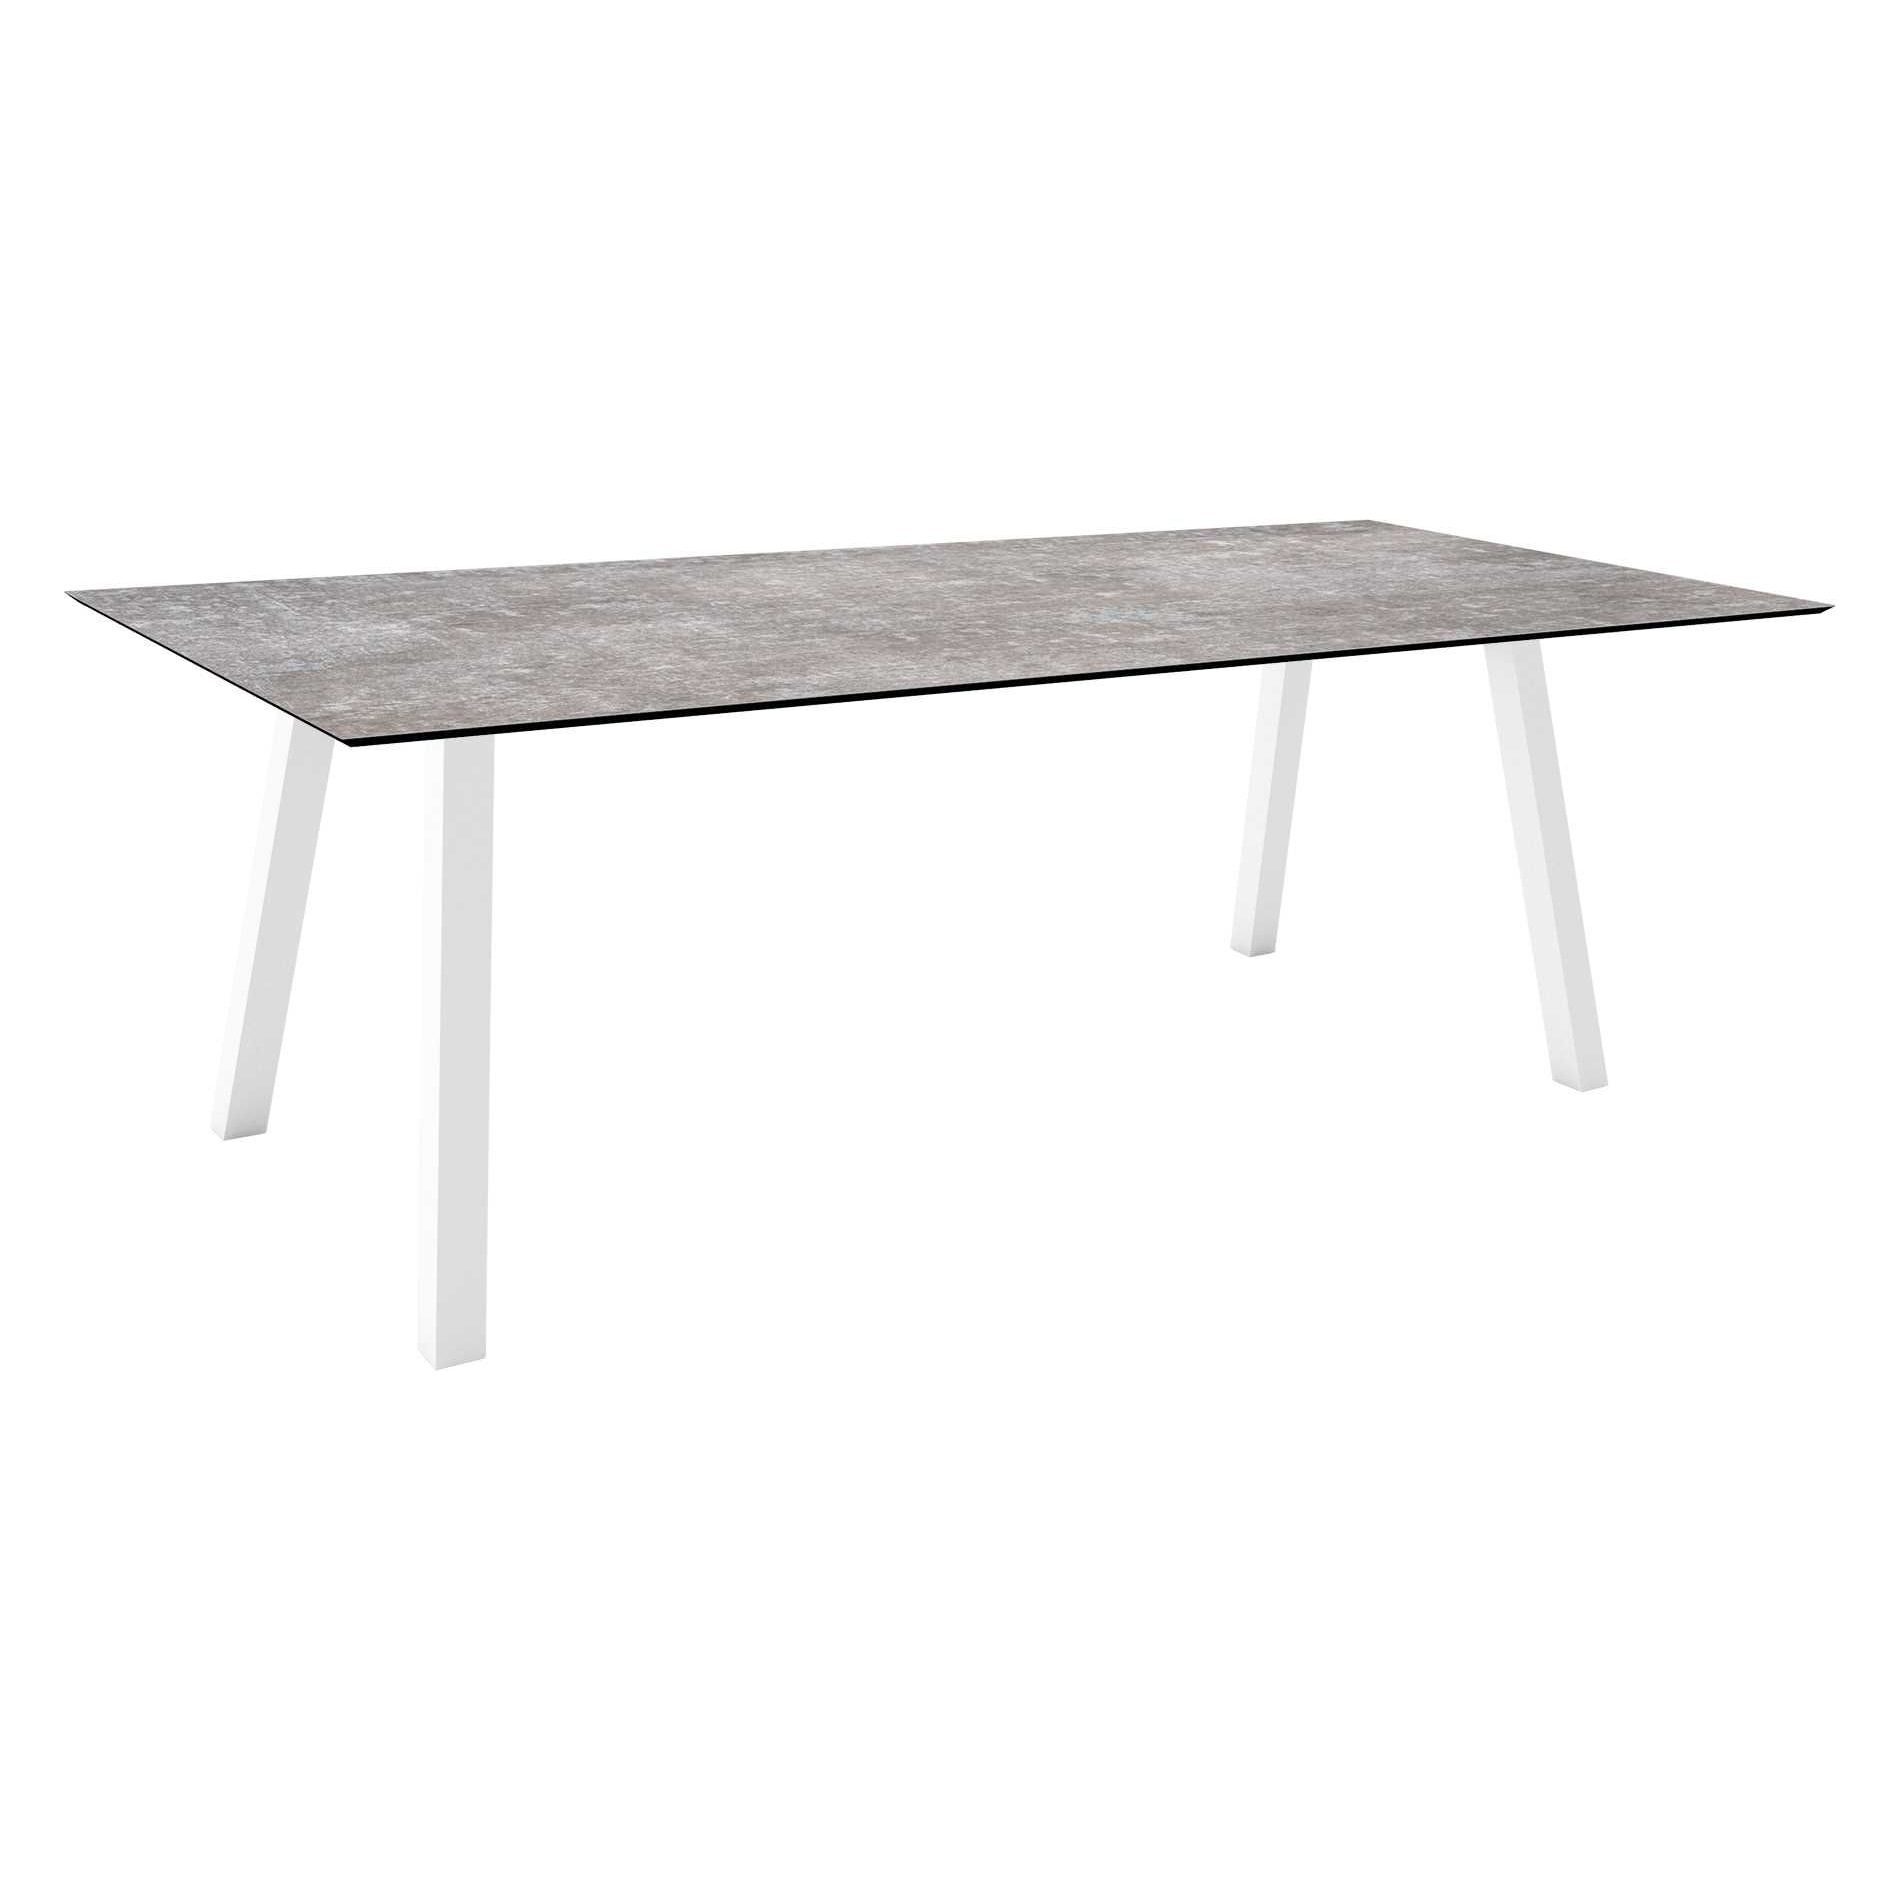 Stern Tisch "Interno", Größe 220x100cm, Alu weiß, Vierkantrohr, Tischplatte HPL Metallic Grau